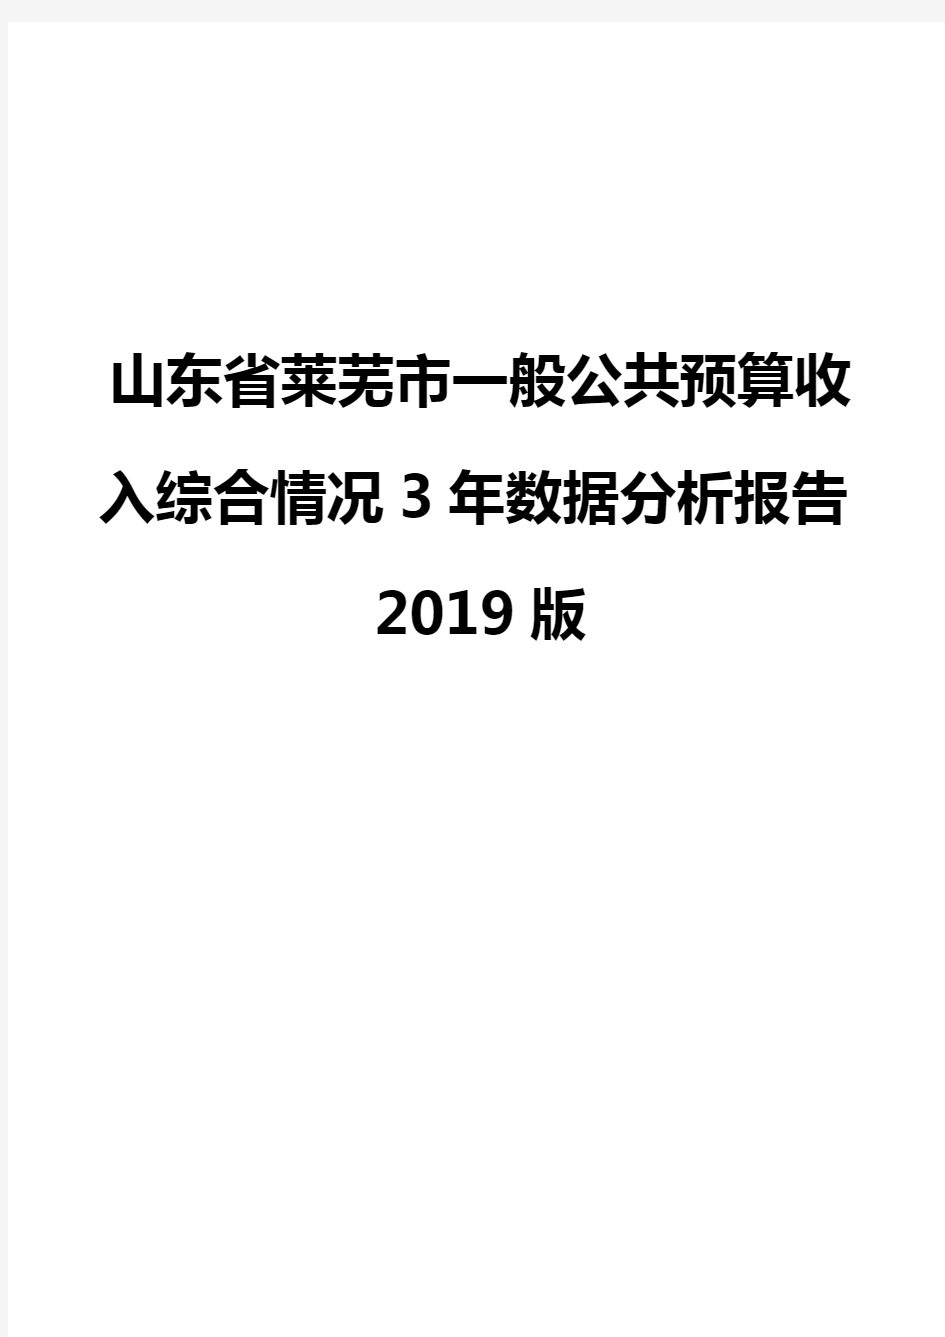 山东省莱芜市一般公共预算收入综合情况3年数据分析报告2019版